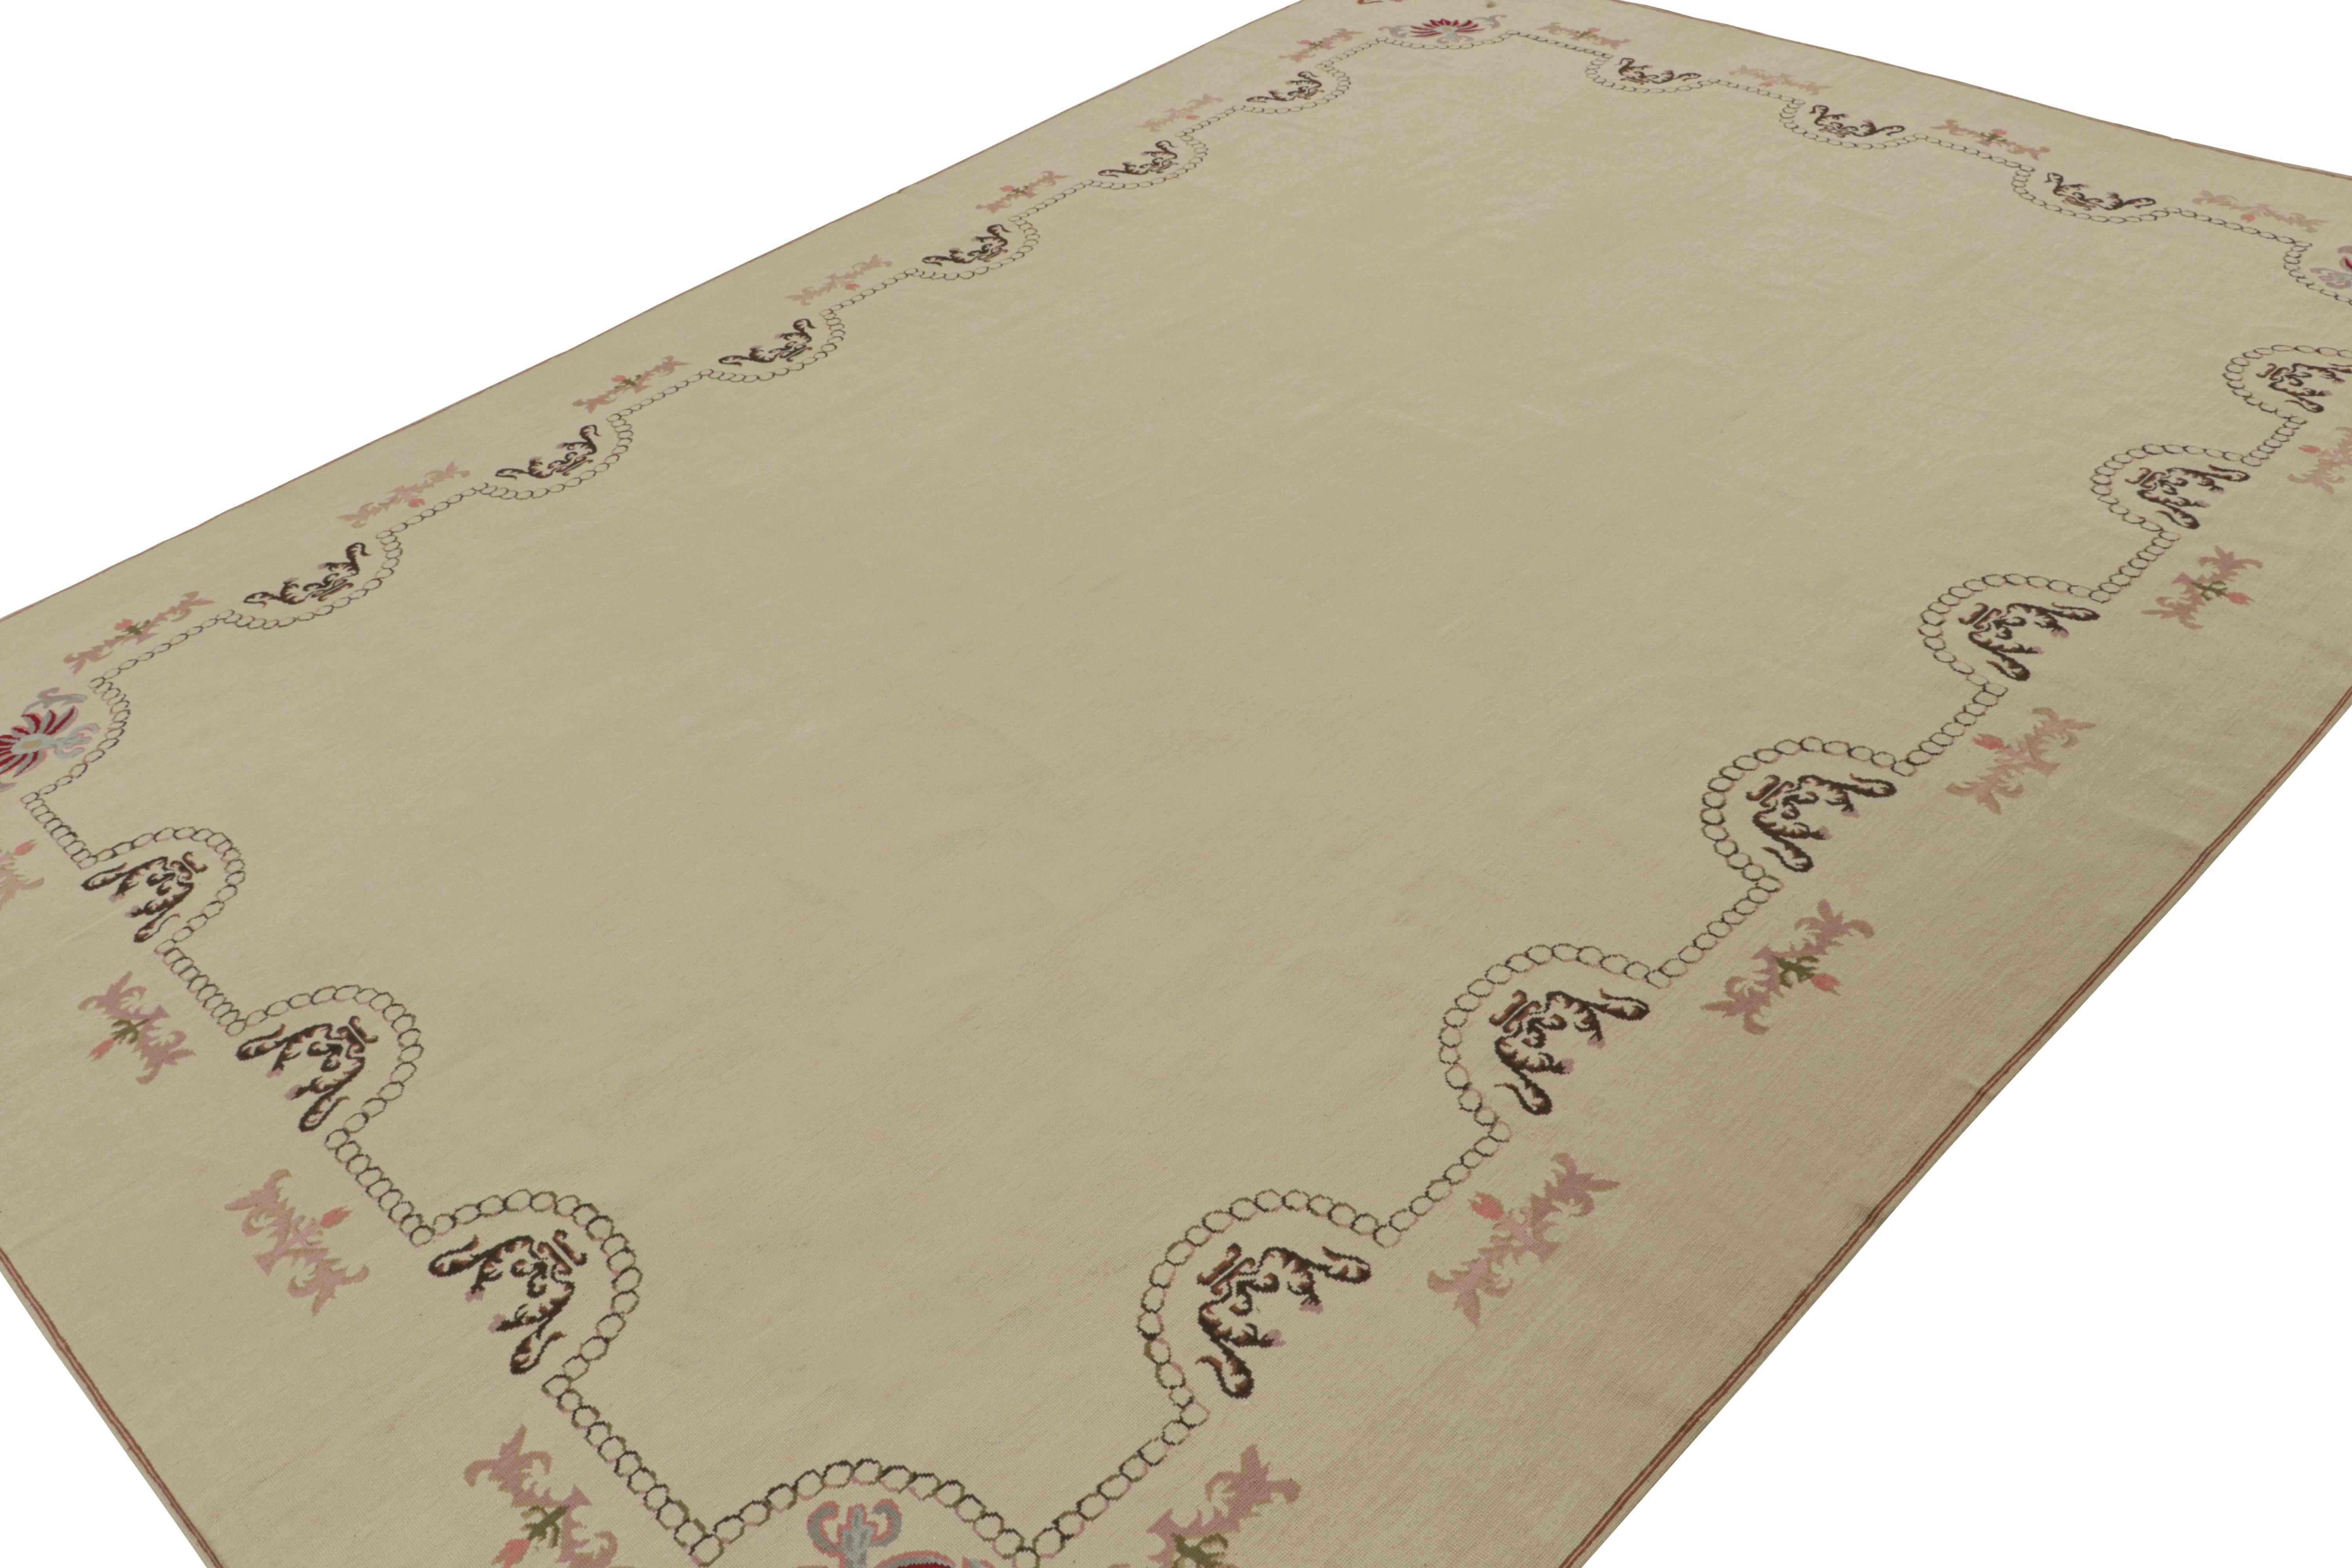 Dieser 9x13 große Aubusson-Flachgewebe-Teppich aus handgewebter Wolle ist ein besonders seltenes Design für diese Ästhetik, die für ihre zahlreichen Muster bekannt ist - insbesondere ein offenes Felddesign mit einem minimalistischen Muster aus